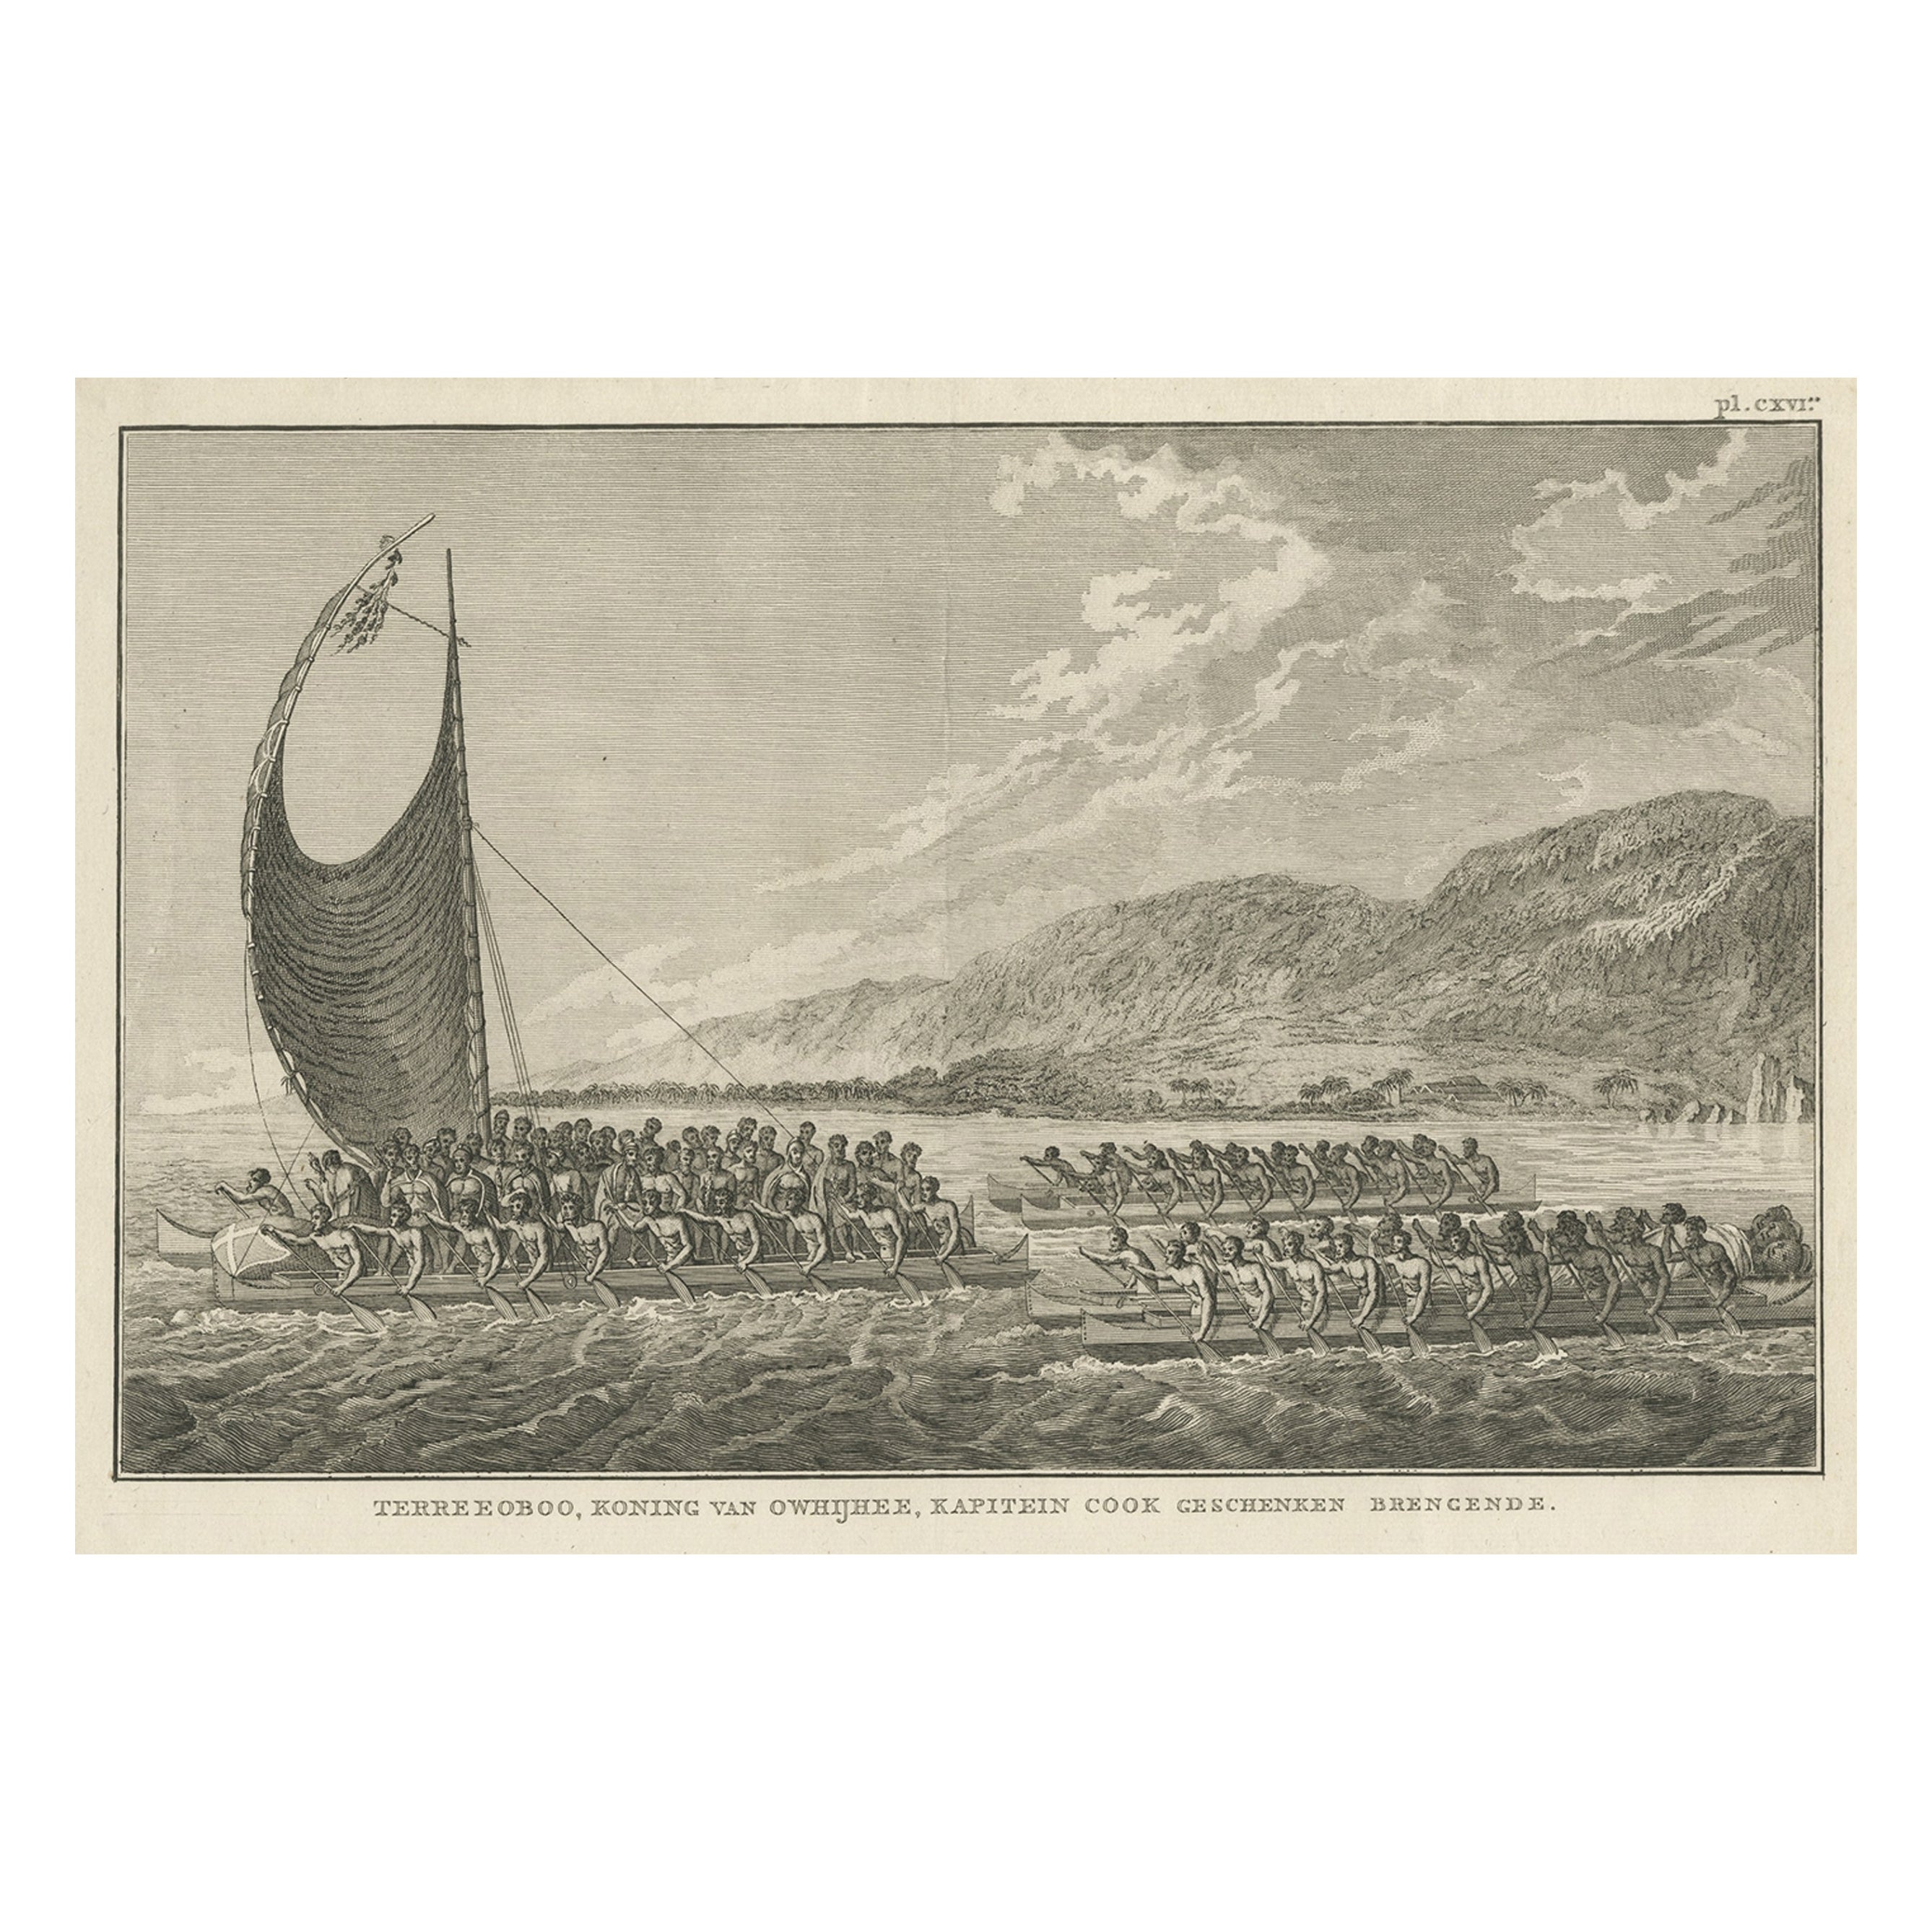 Der König von Owyhee, Sandwich Isles „Hawaii“ mit Geschenken für Kapitän Cook, 1803